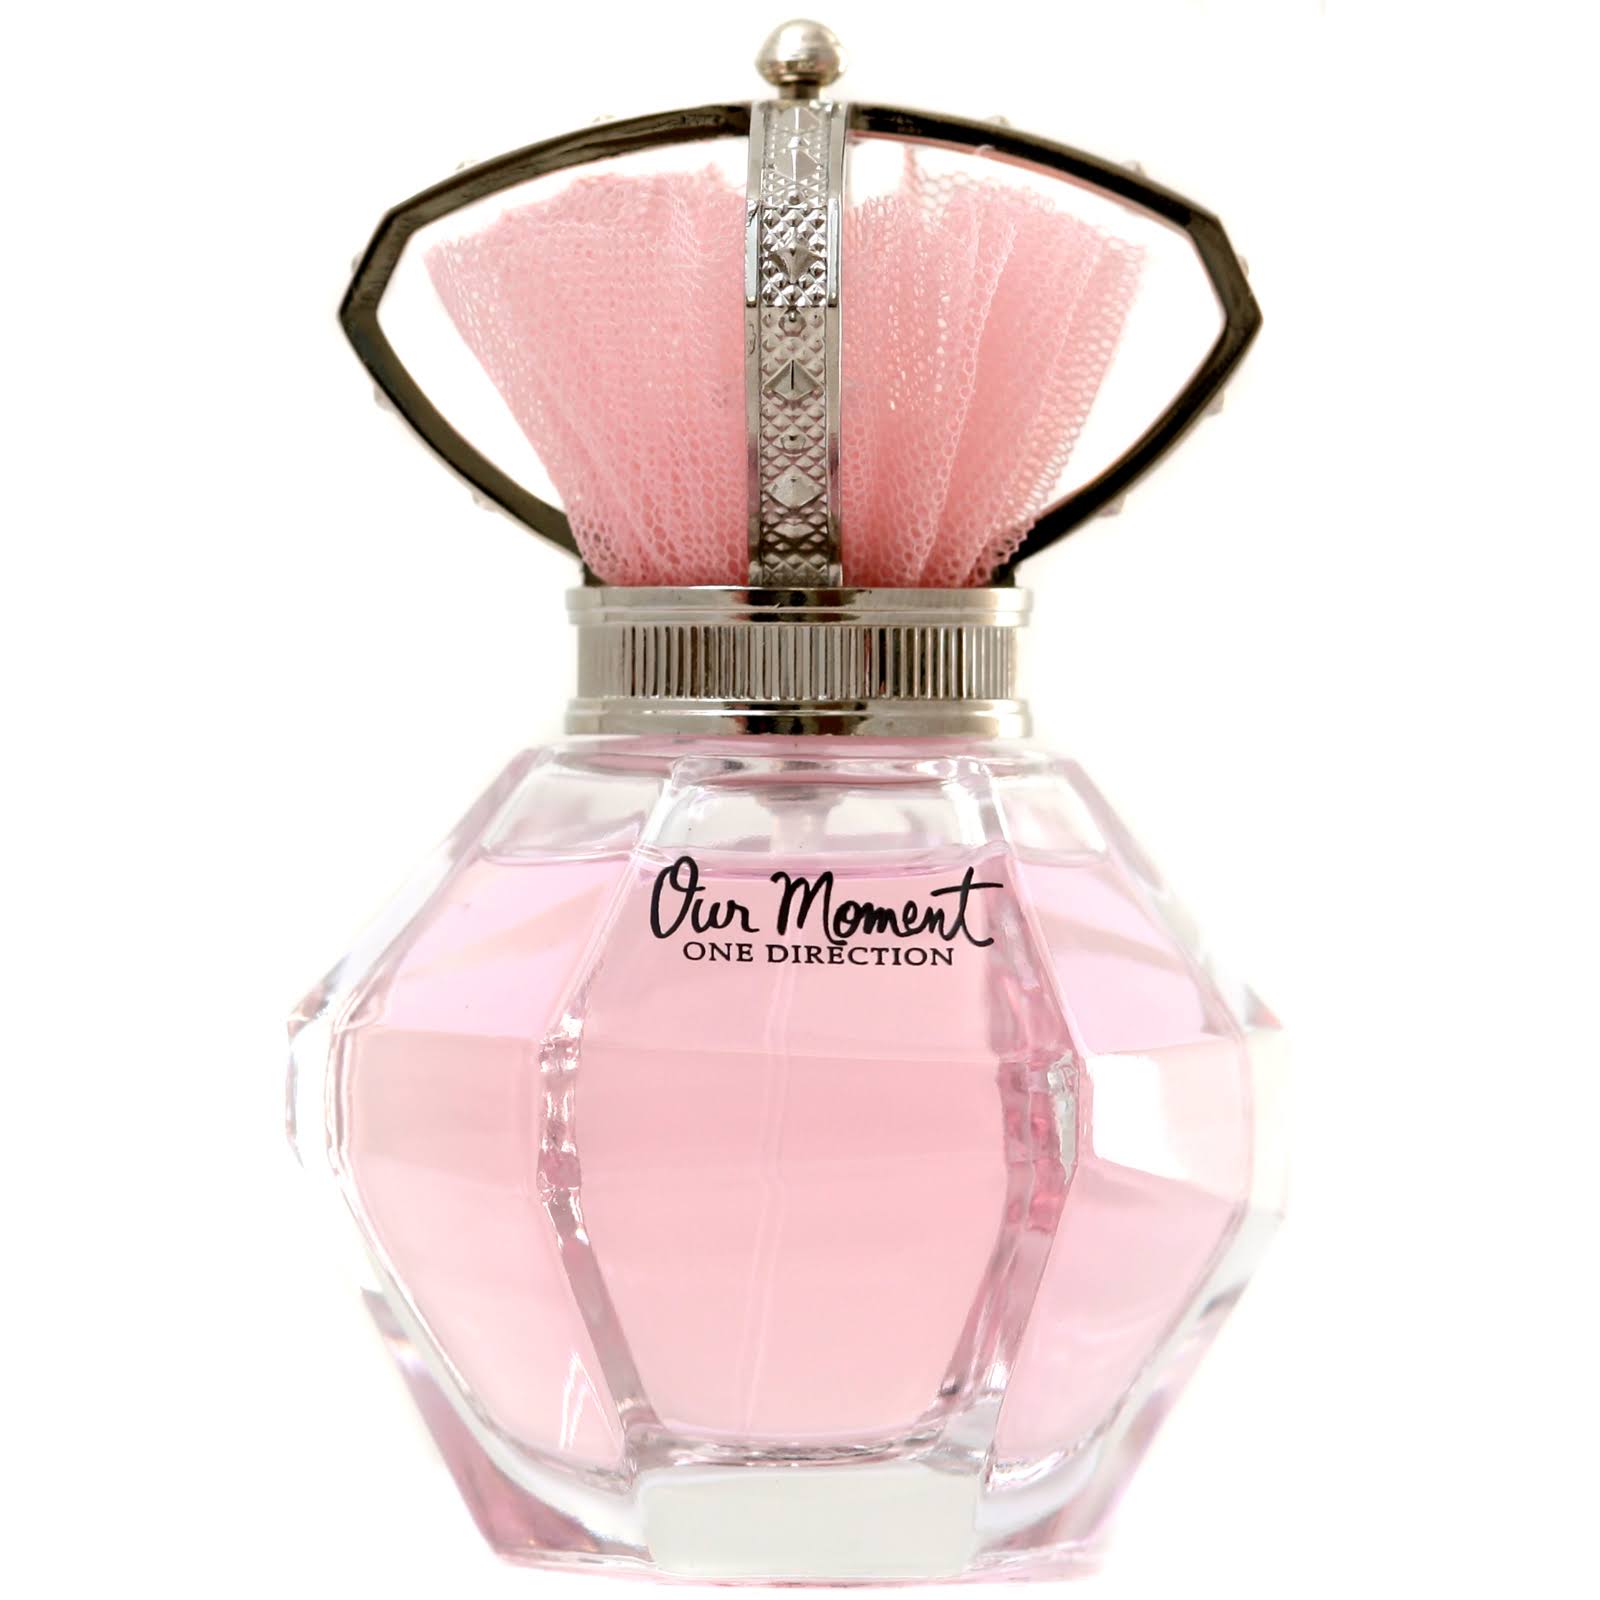 One Direction Our Moment Eau De Parfum Spray for Women